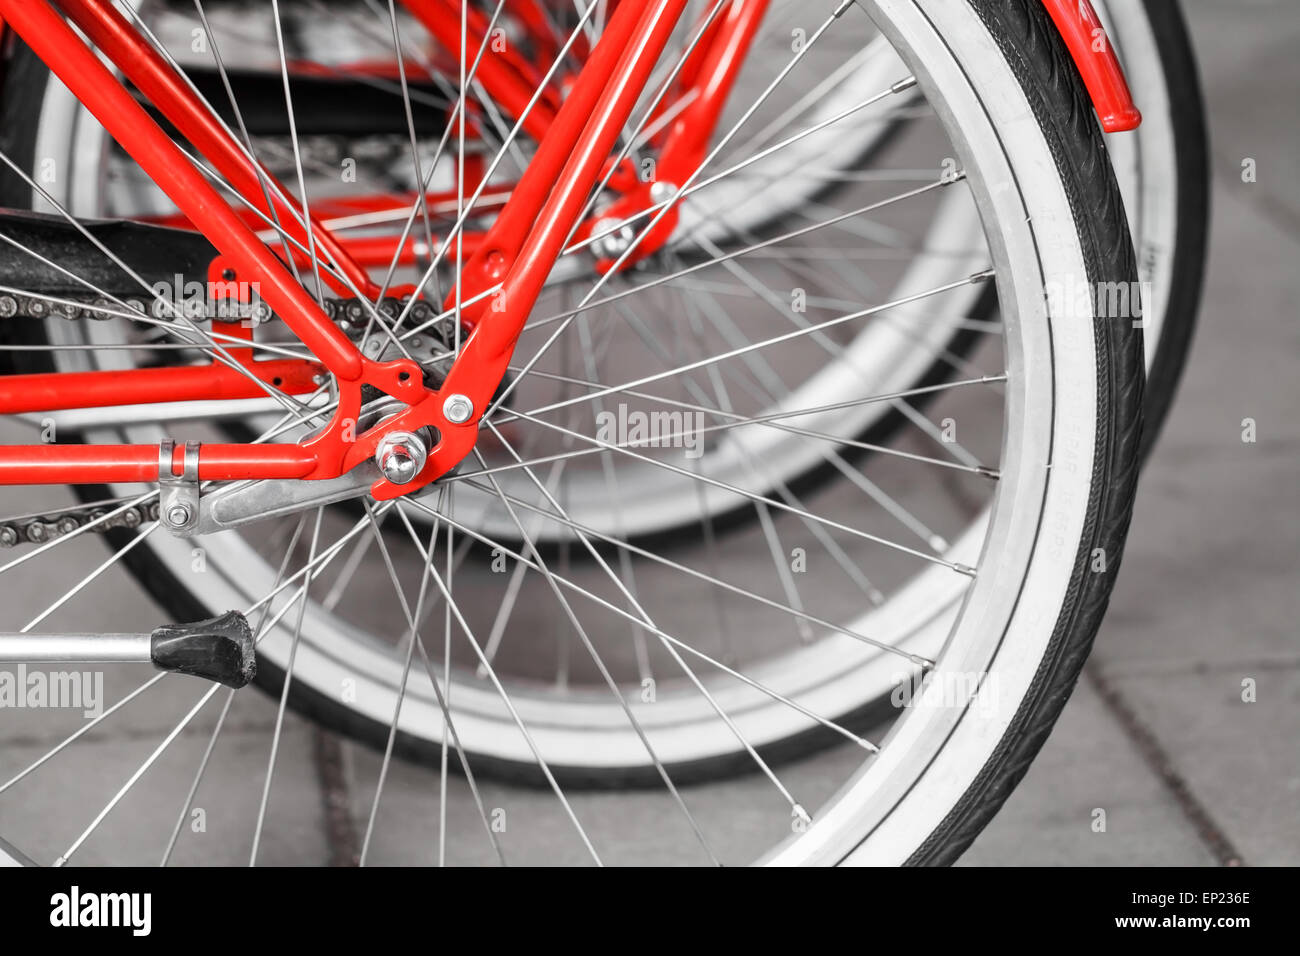 Parcheggiato red street biciclette a noleggio, ruote posteriori frammento, messa a fuoco selettiva con DOF poco profondo Foto Stock